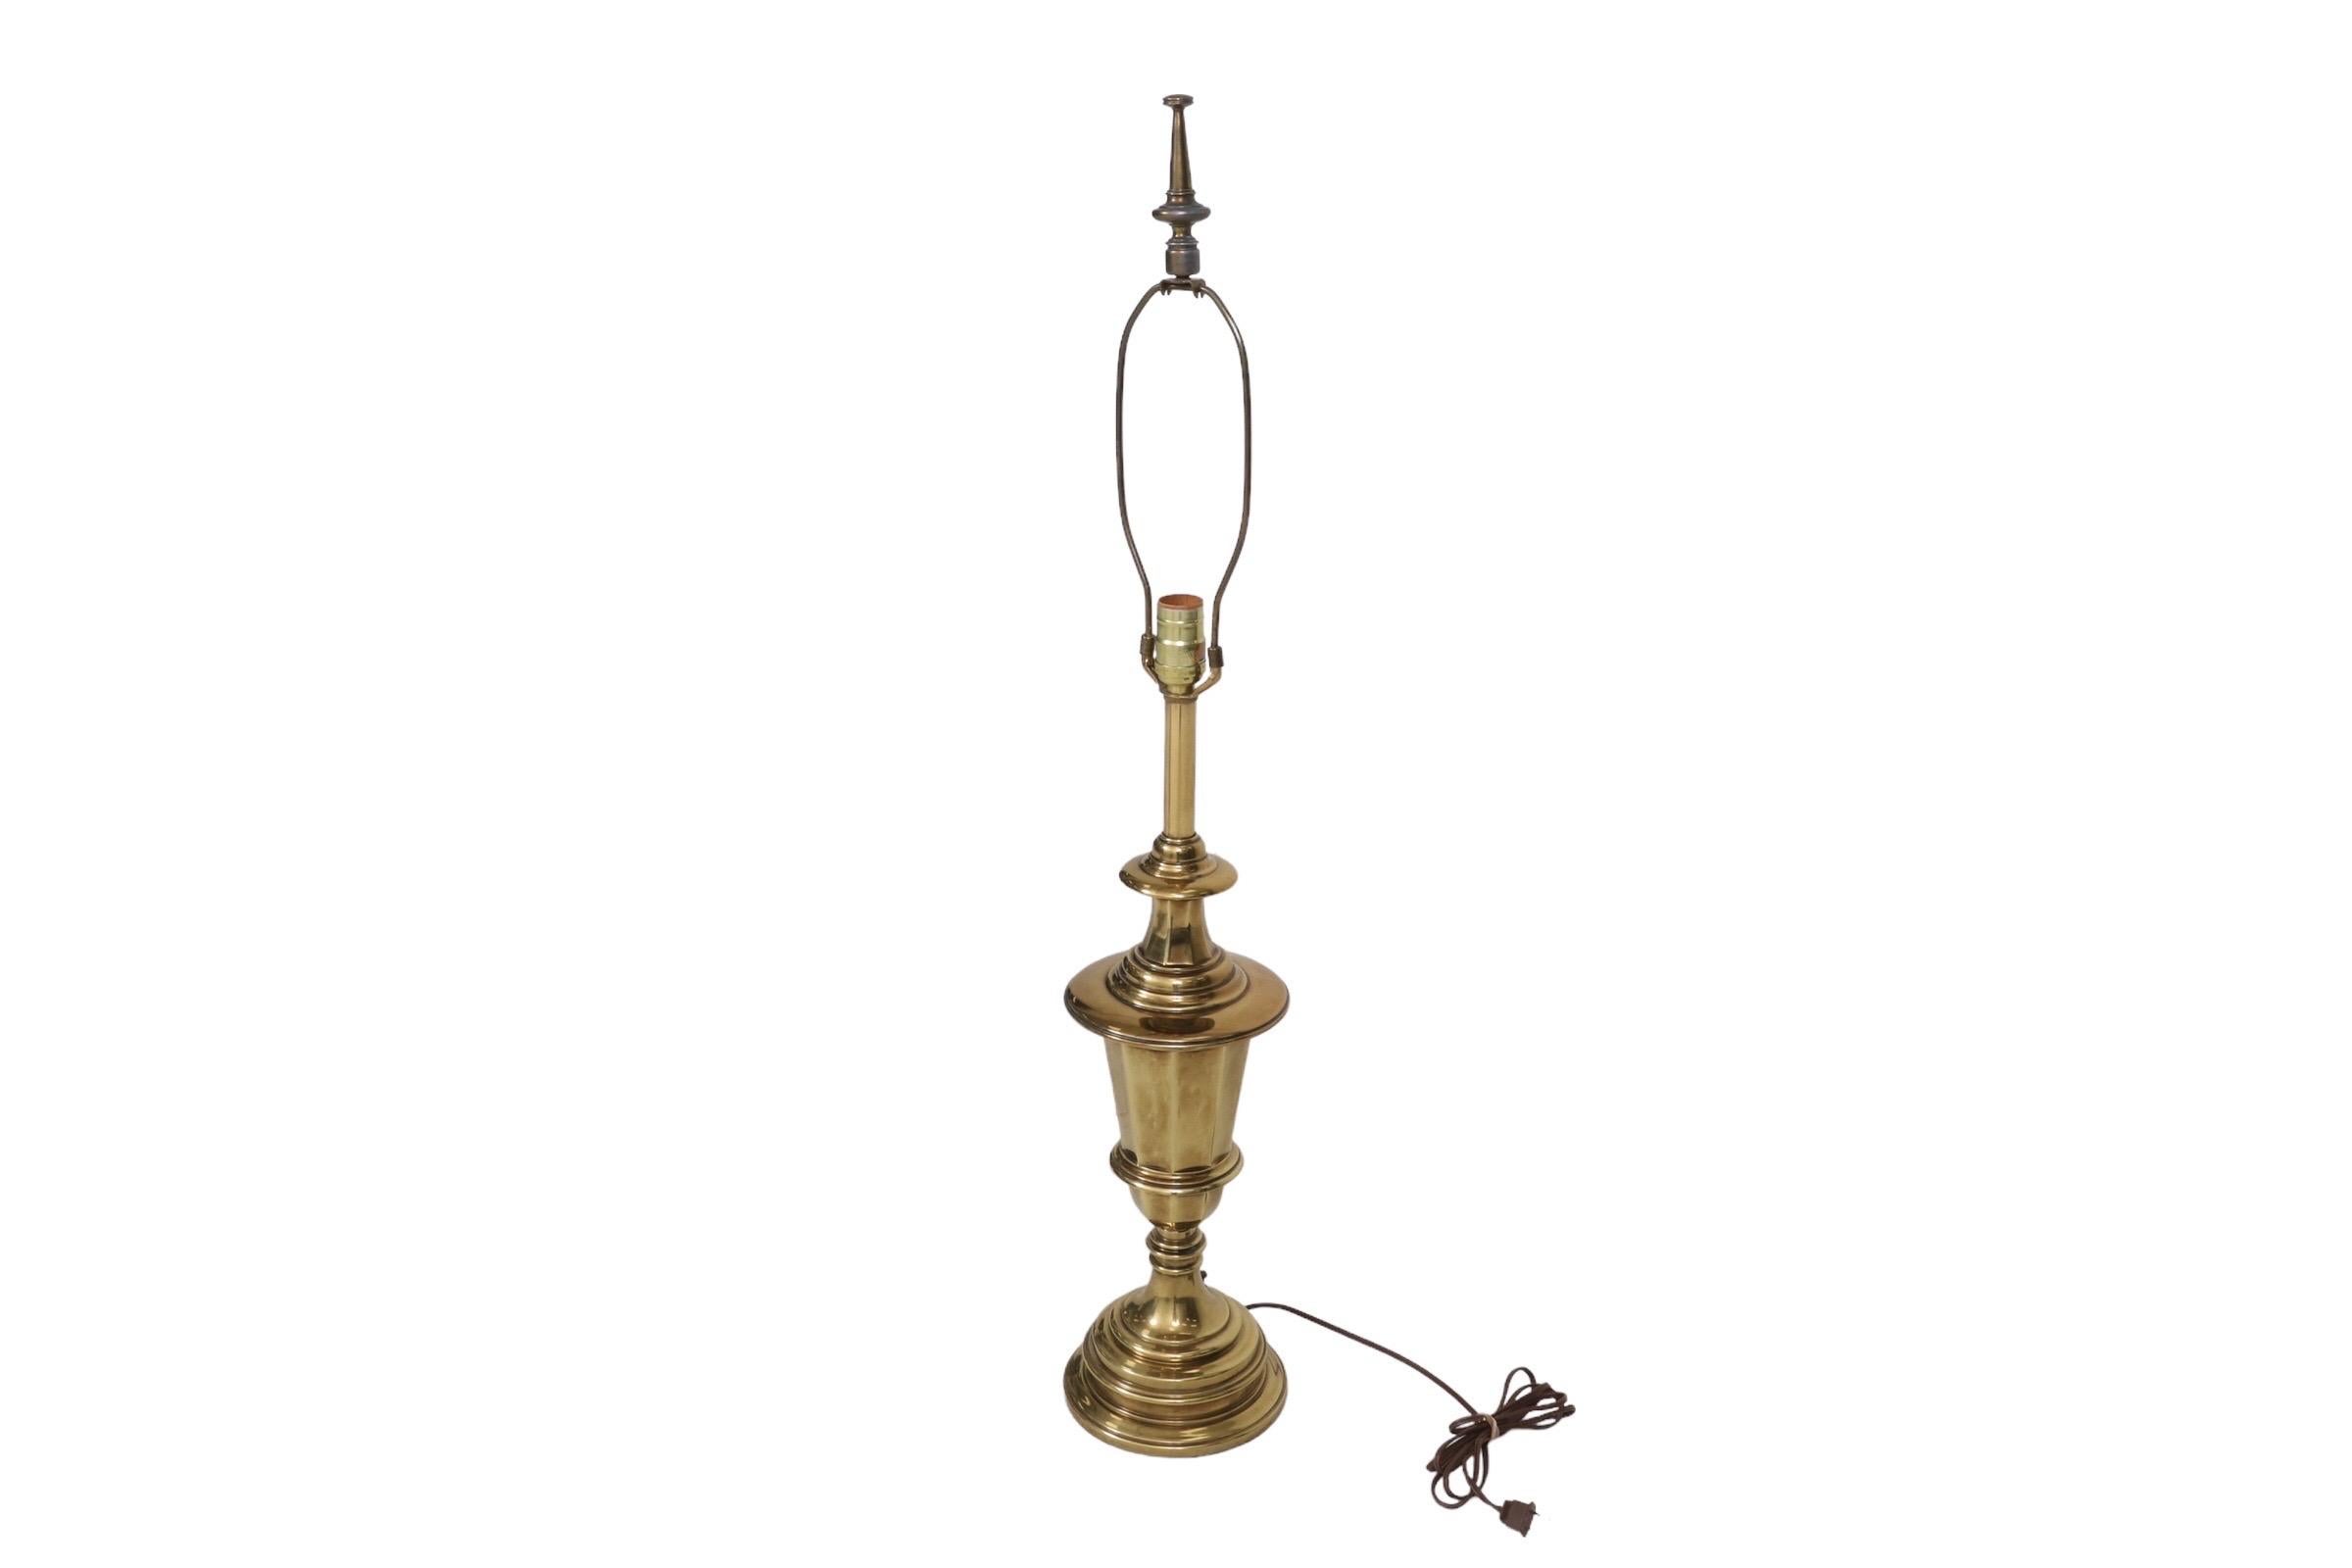 Eine gedrehte Messing-Tischlampe von Stiffel. Eine gedrechselte Mittelsäule über einer achteckigen, abgewinkelten Vase ist mit einem runden, gedrechselten Sockel gespiegelt. Die Harfe wird von einem passenden gedrechselten Messingknauf gekrönt. Das